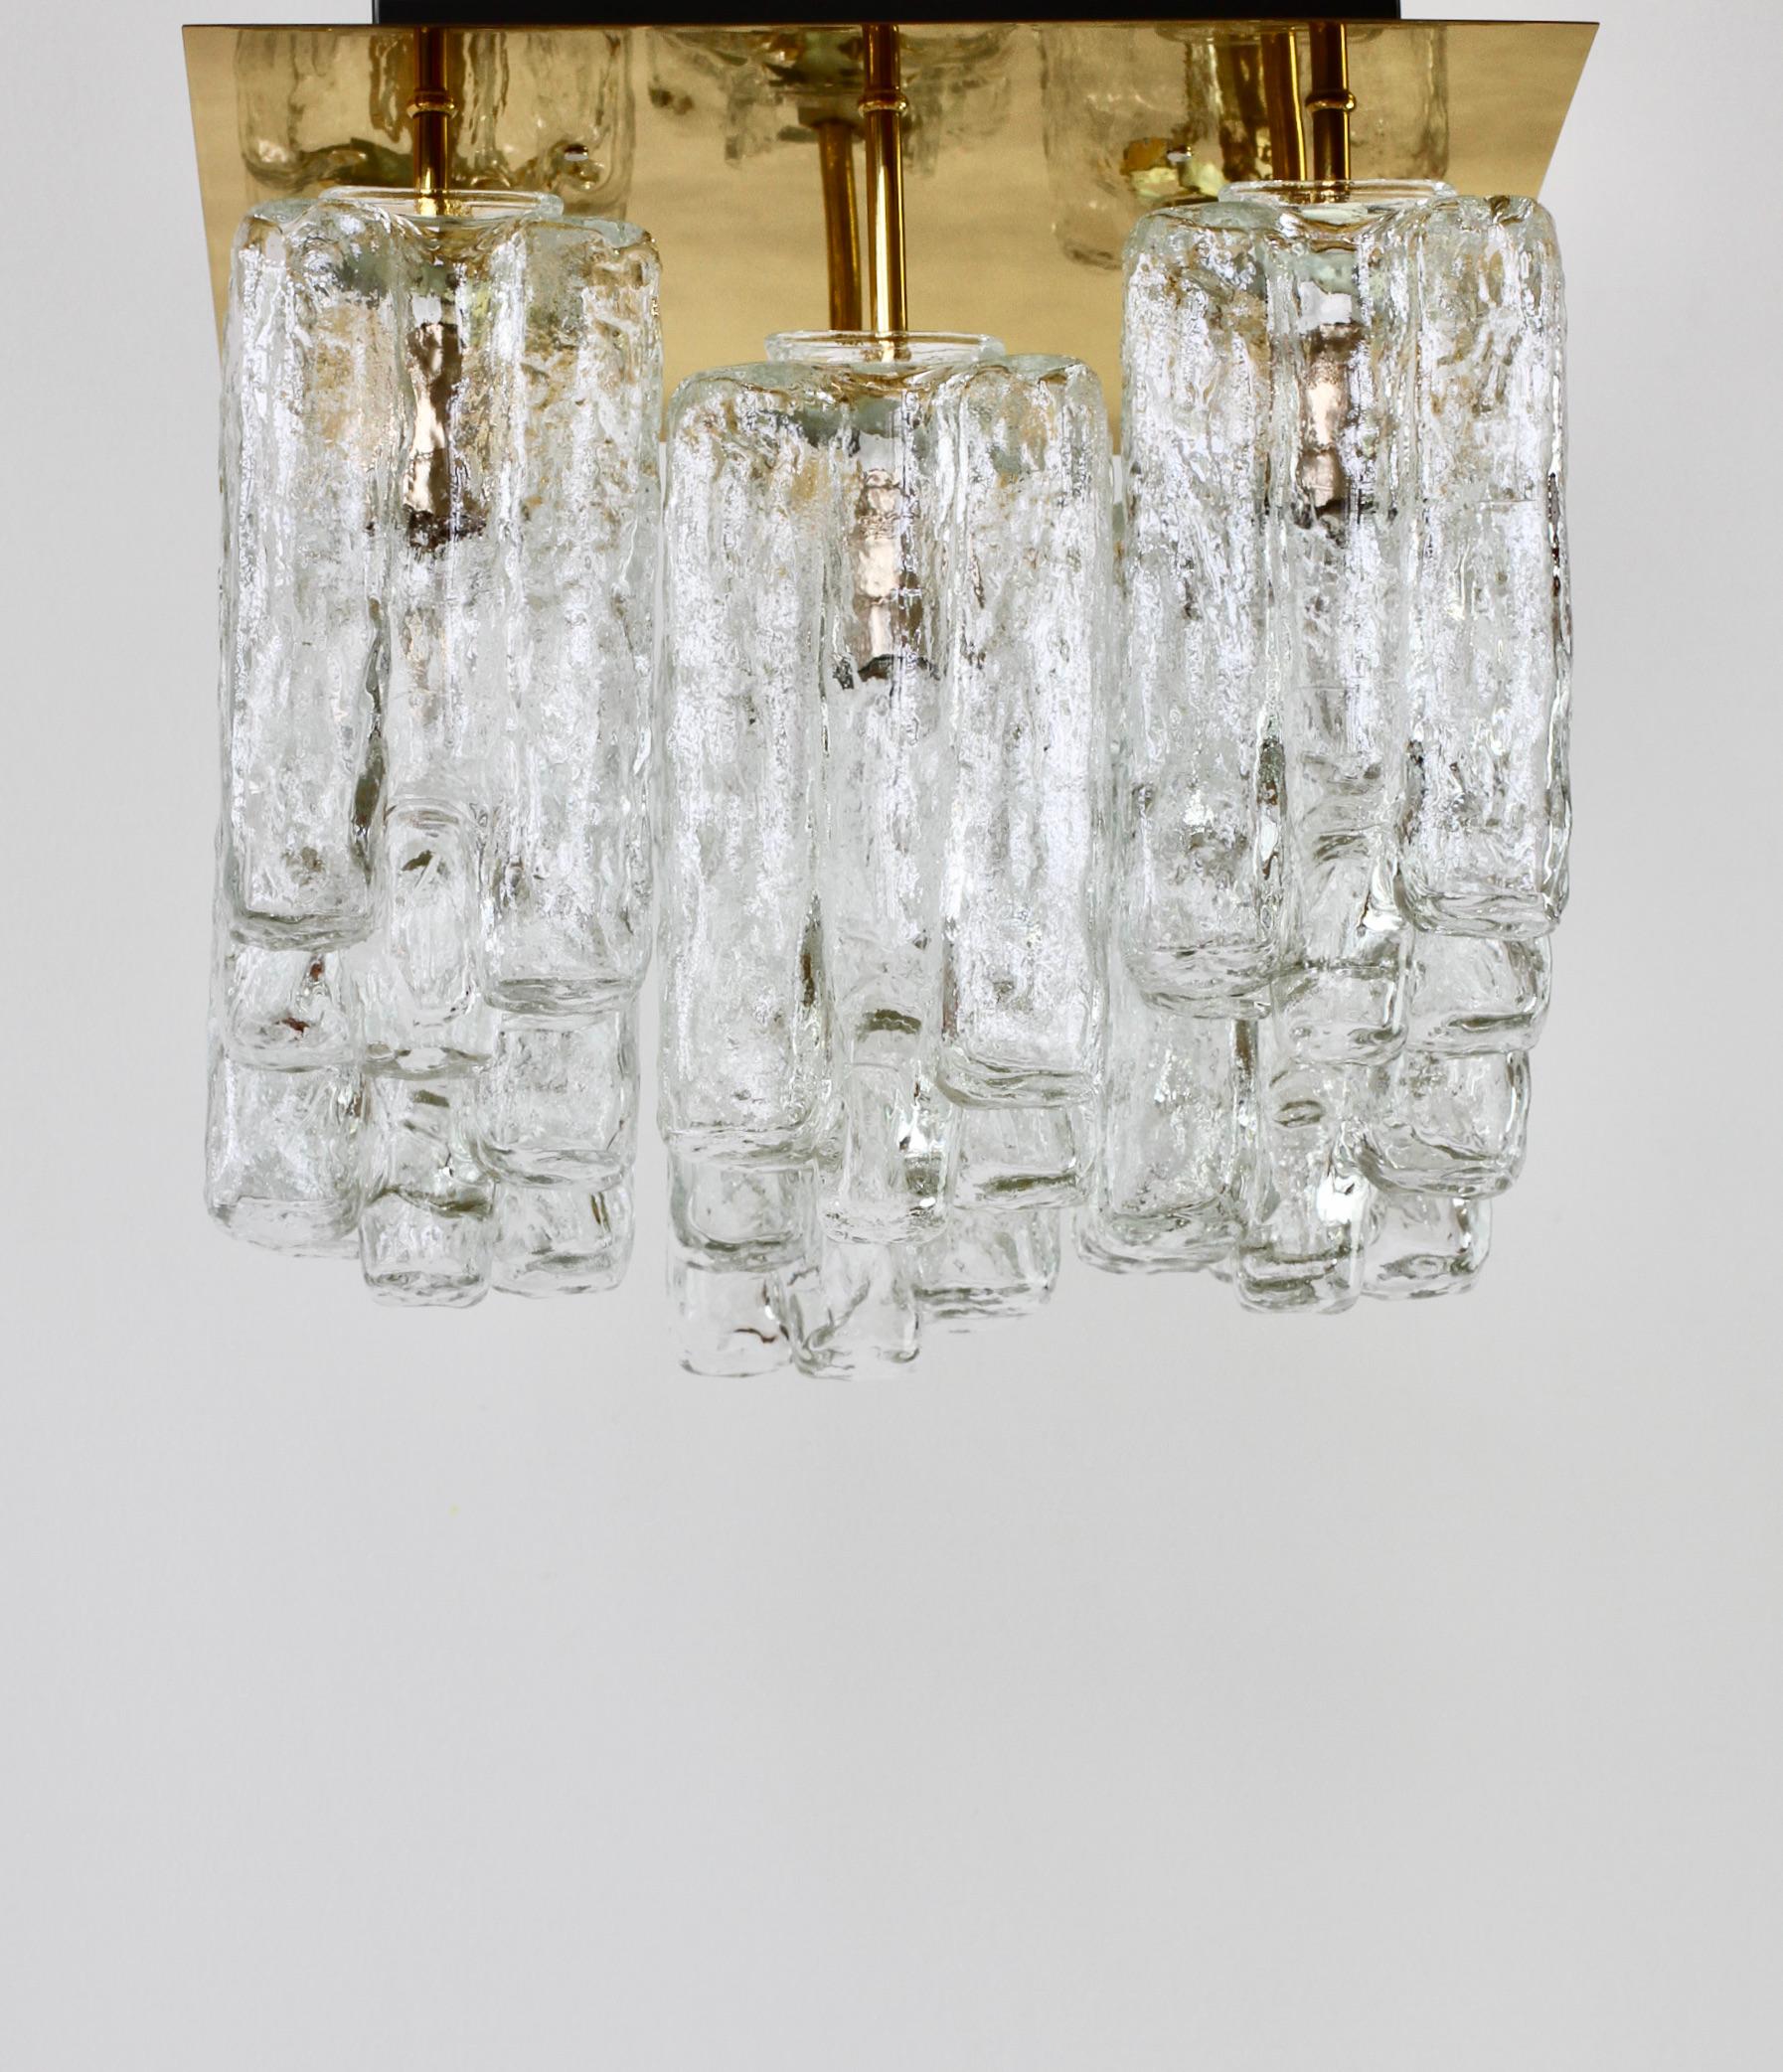 Seltenes großes 'Granada'-Modell mit Messingbeschlägen und Eiskristallglas von Kalmar aus Österreich, um 1970. Acht hängende Glaselemente, die an Eiskristalle erinnern, hängen an einer polierten Messingfassung.

Perfekt für jedes Haus im